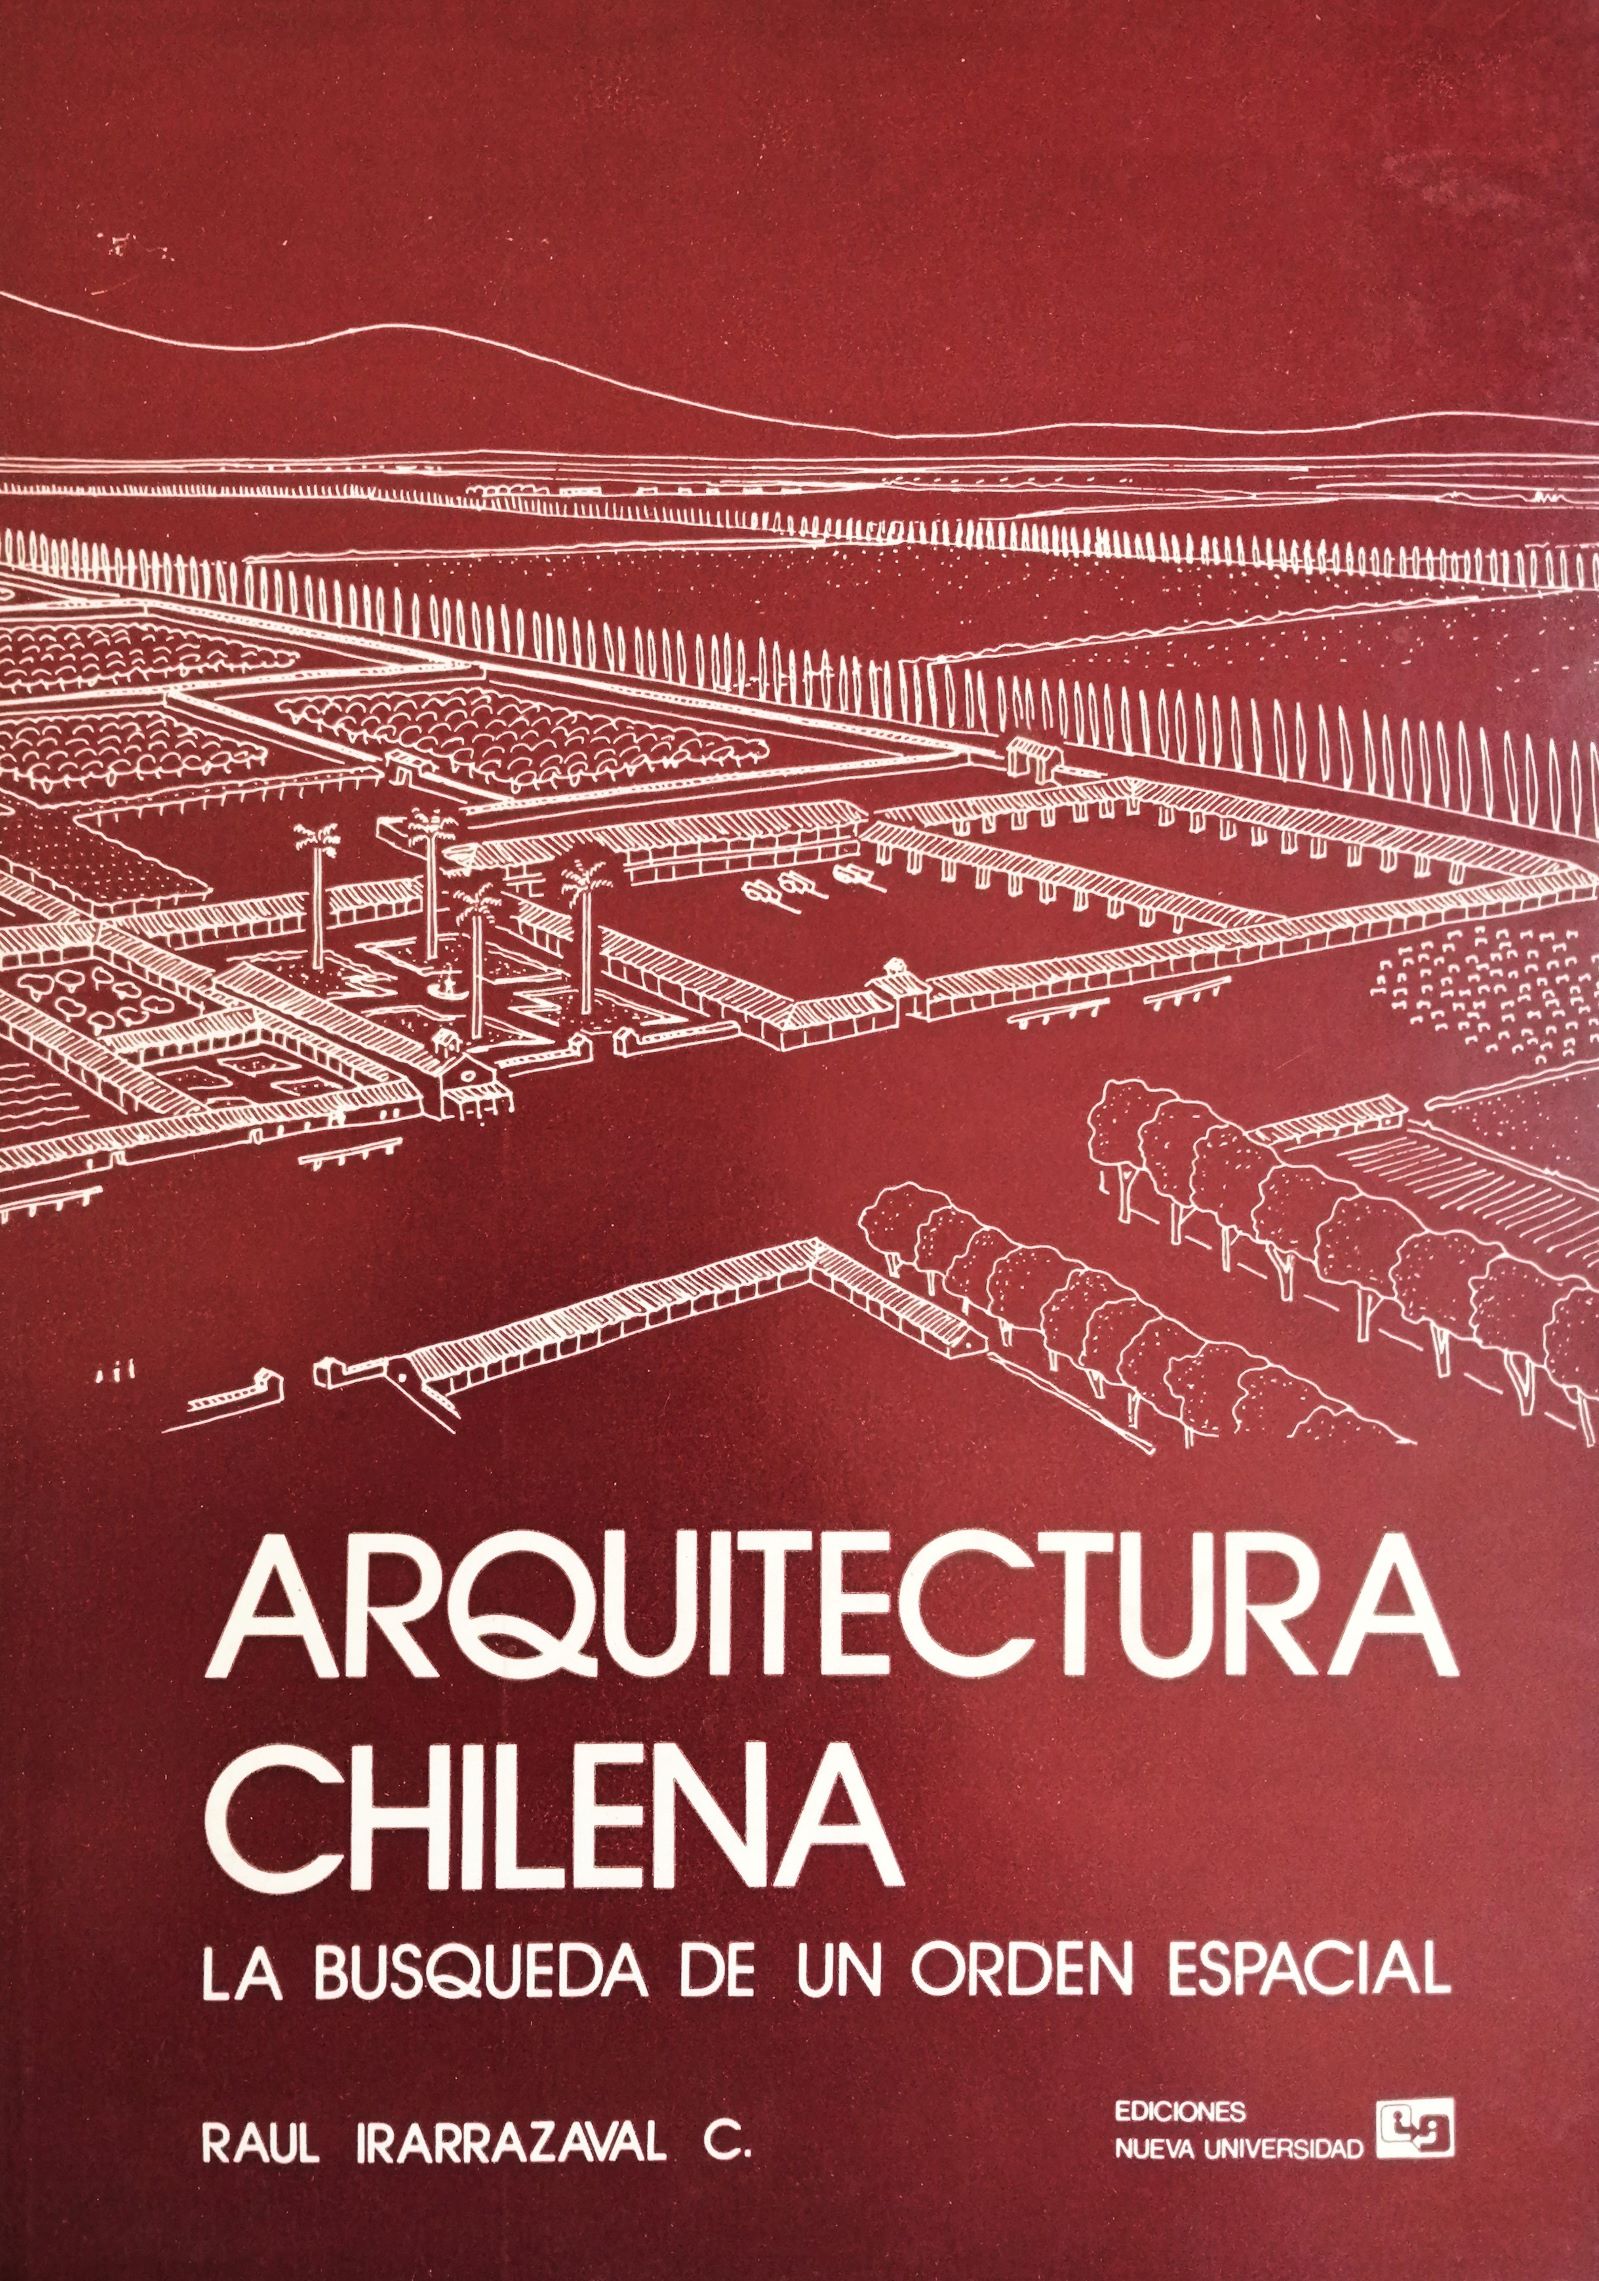 Raúl Irarrázaval C. - Arquitectura chilena: La búsqueda de un orden espacial